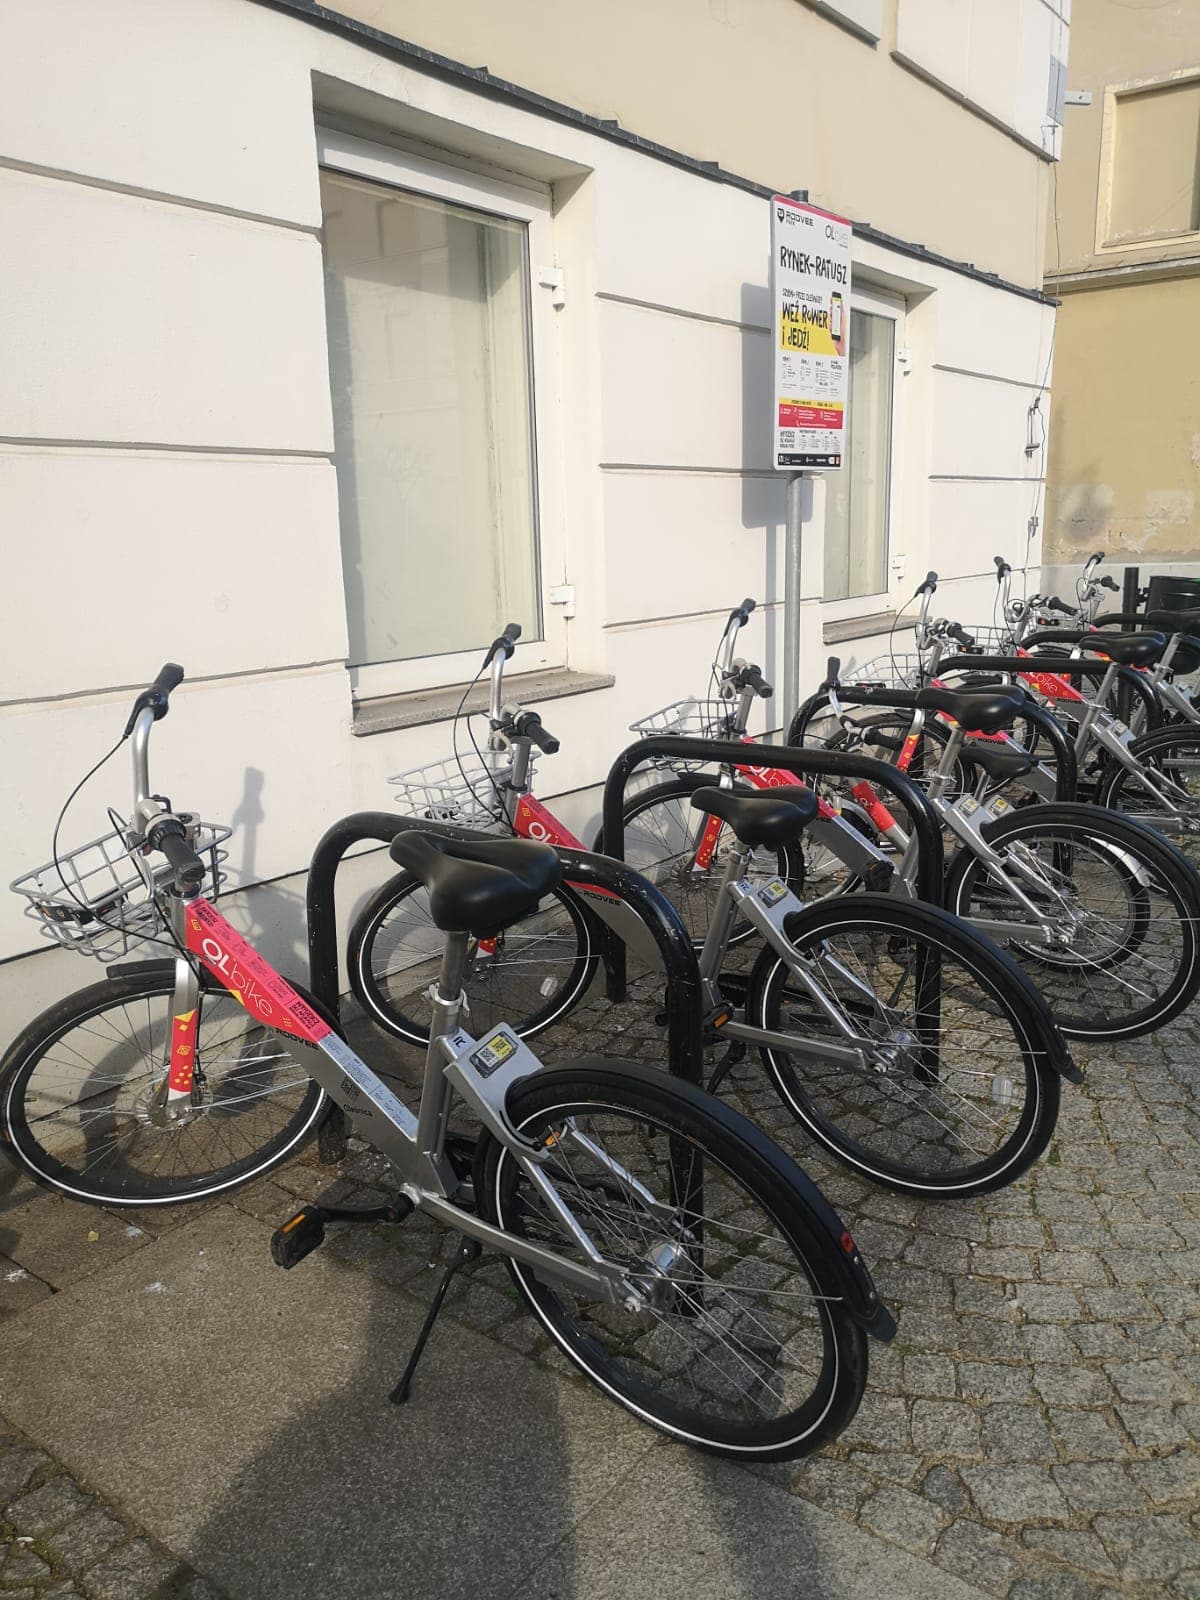 rowery miejskie stojące przy fasadzie budynku